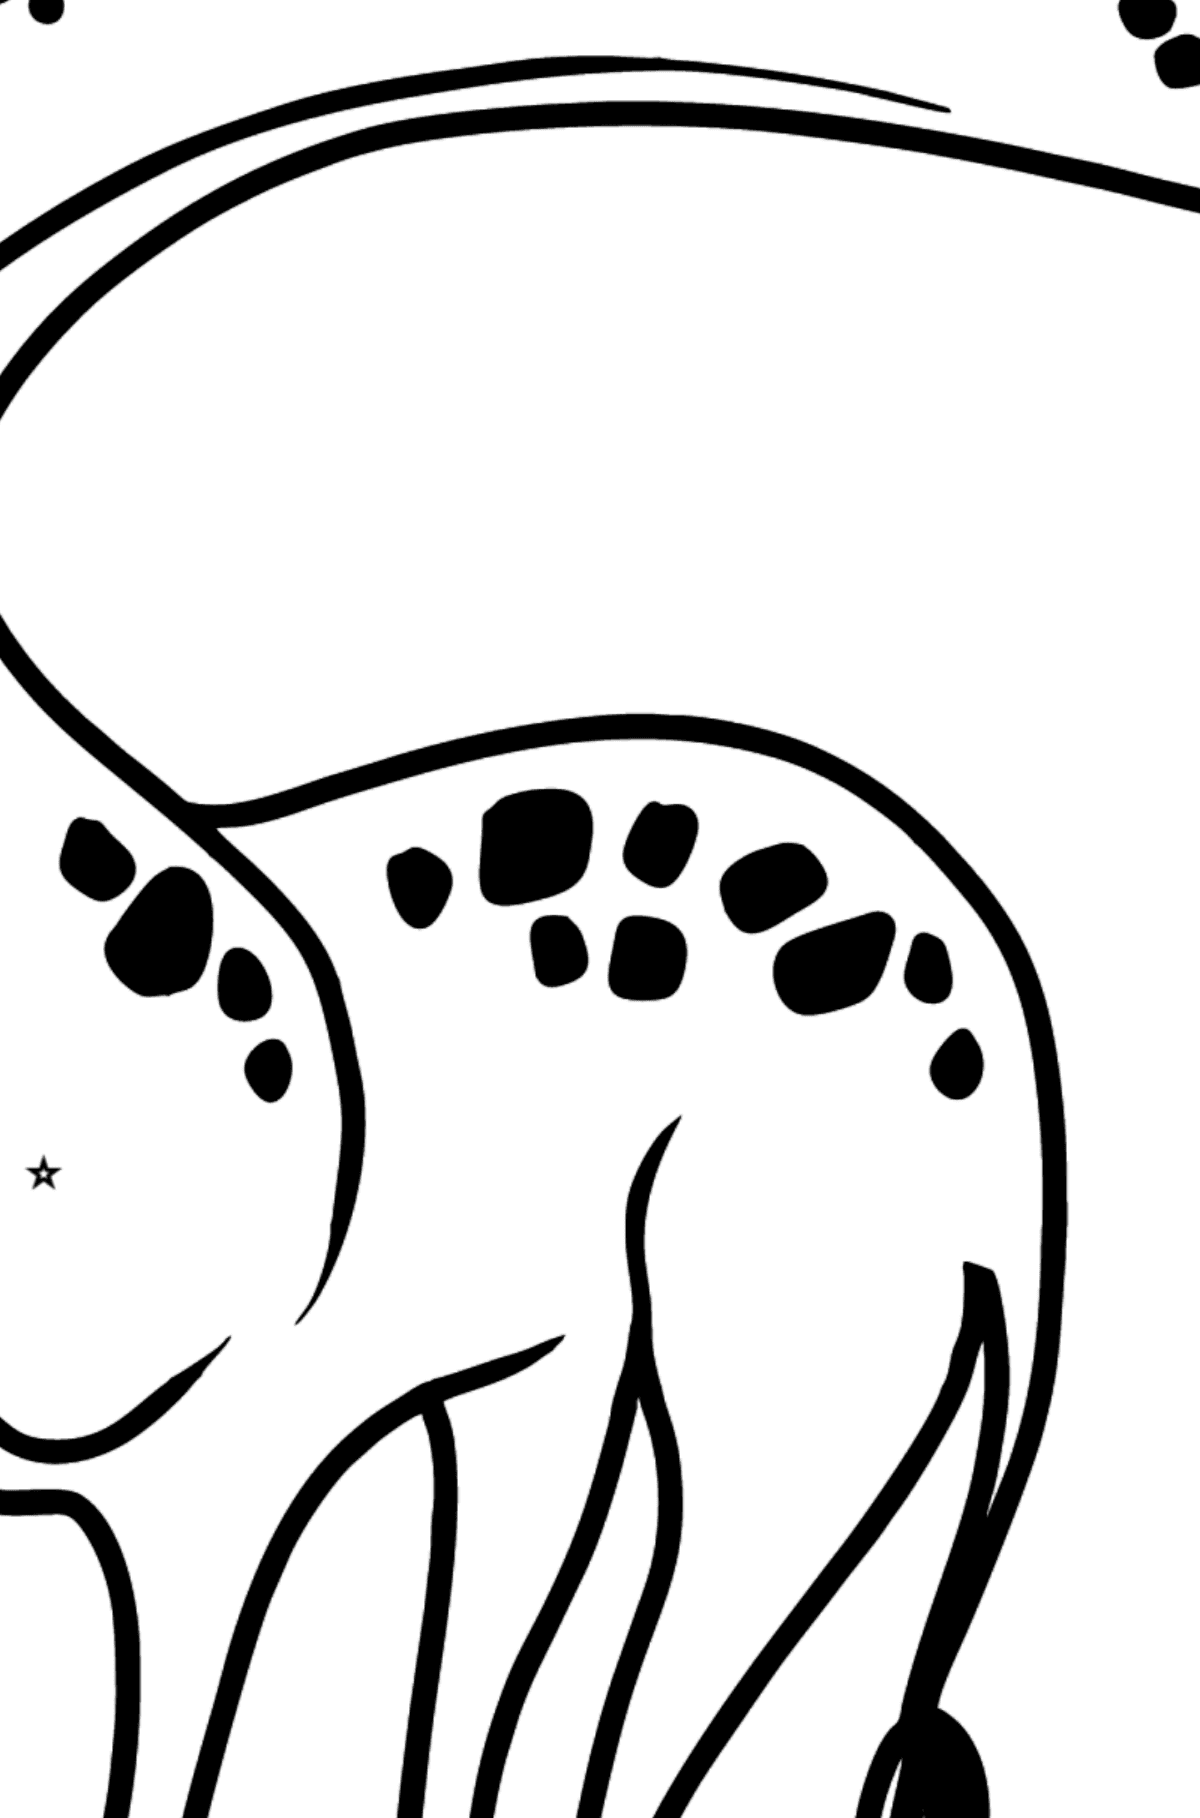 Dibujo de jirafa para colorear - Colorear por Formas Geométricas para Niños